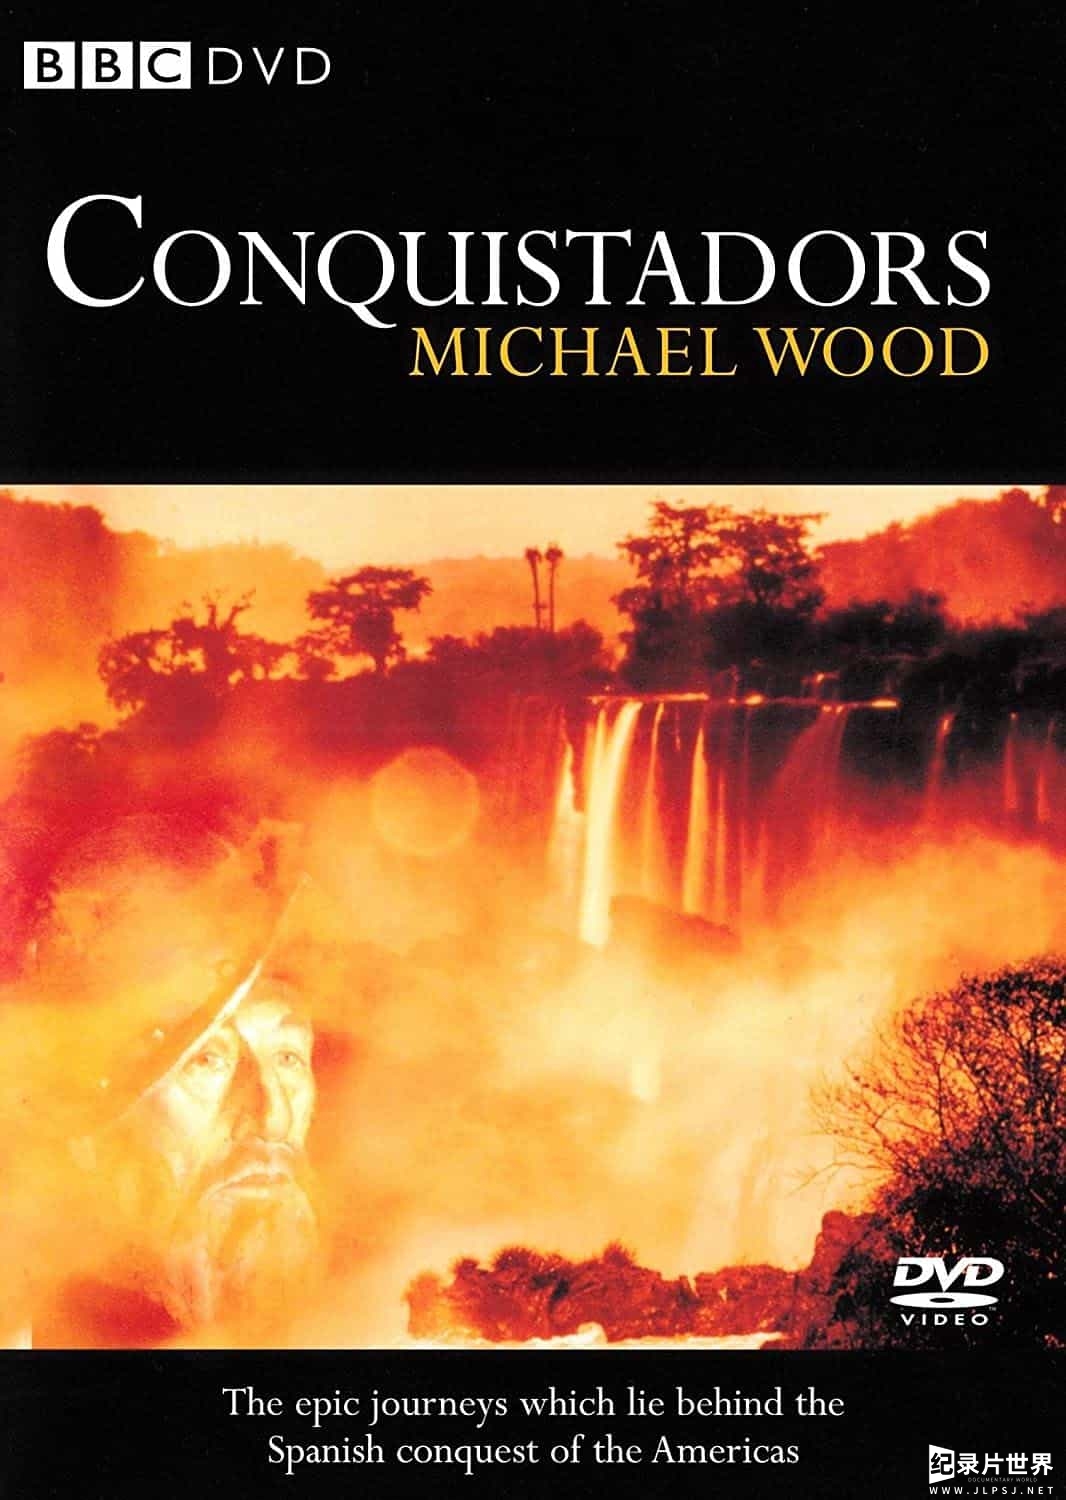 BBC/PBS纪录片《征服者 Conquistadors》全4集